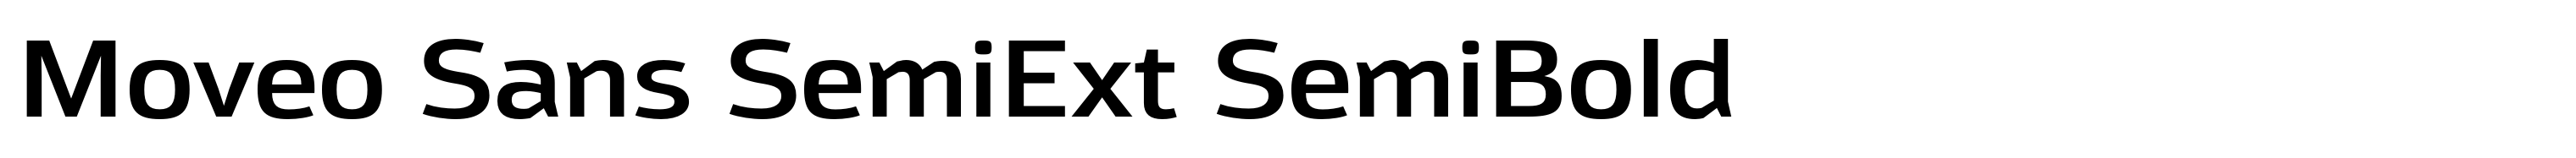 Moveo Sans SemiExt SemiBold